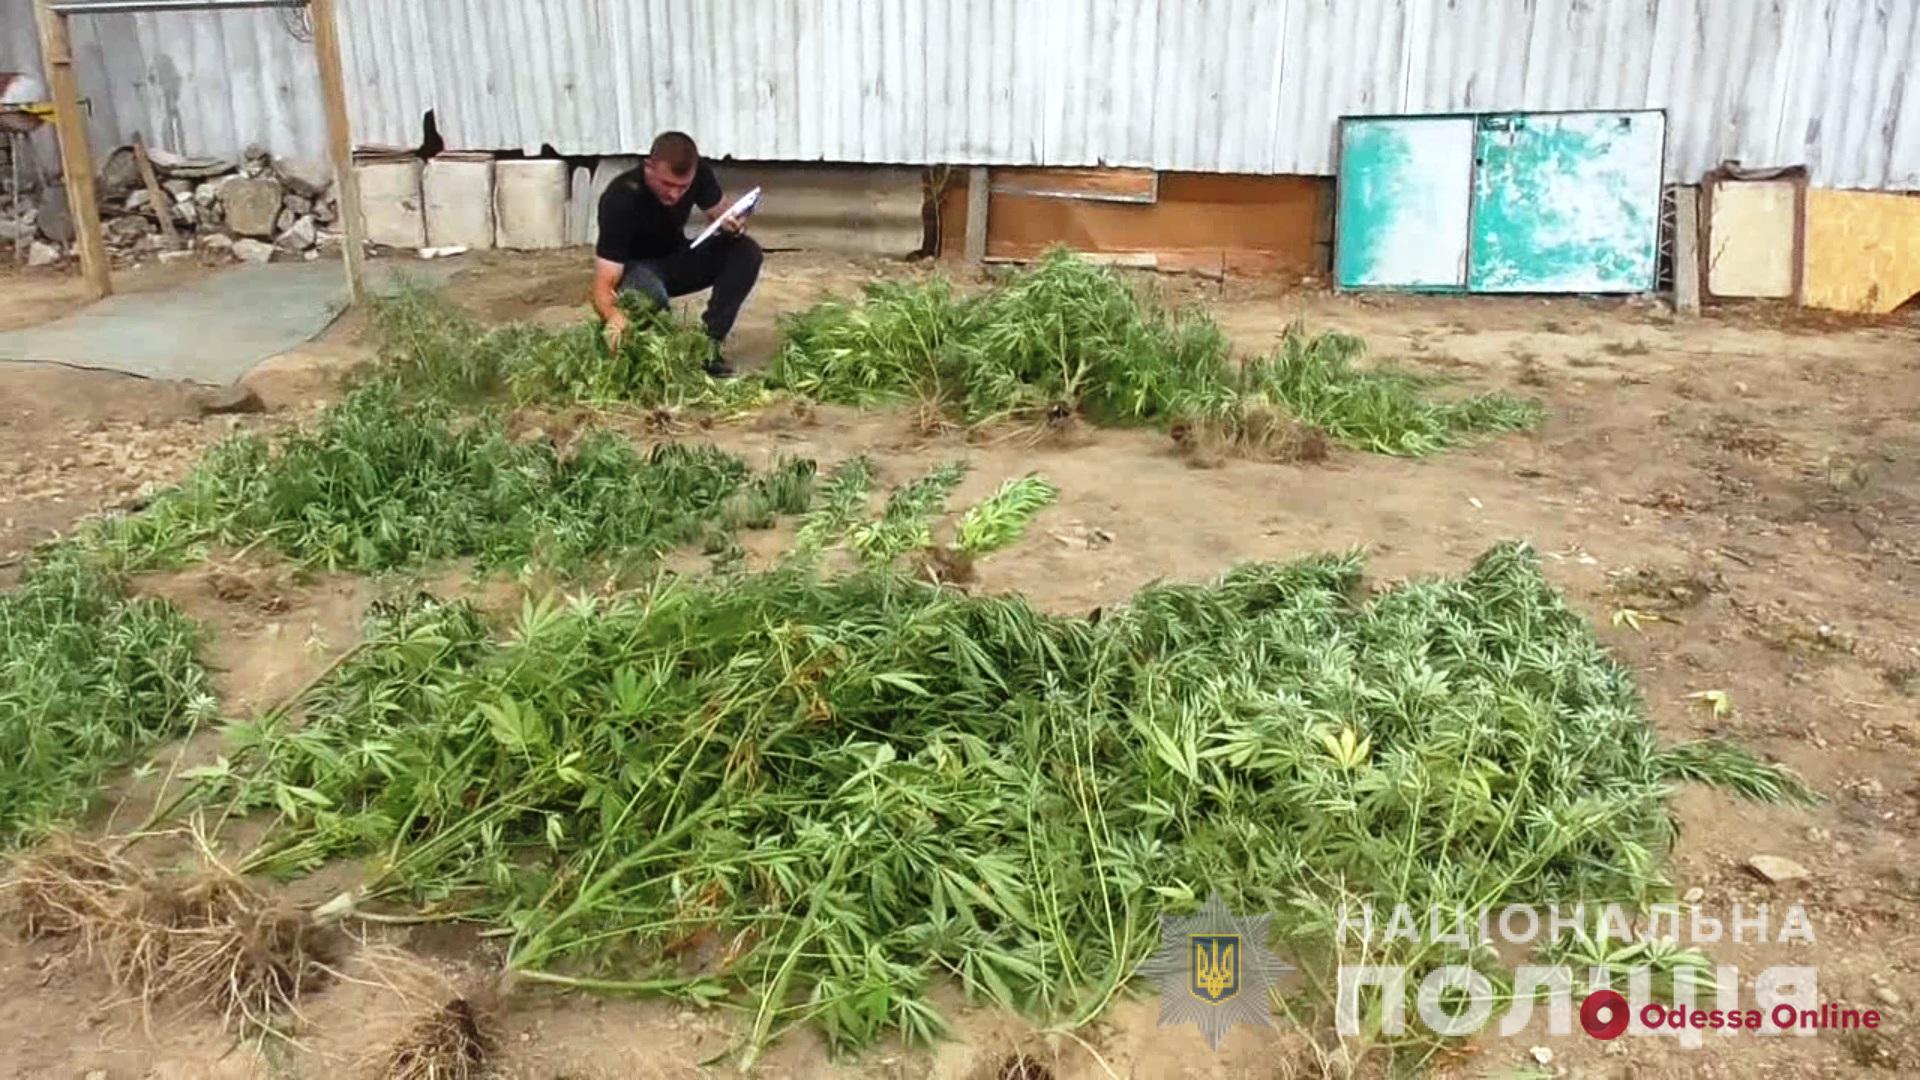 Обустроил в своем дворе теплицу с коноплей: в Одесской области разоблачили наркоагрария